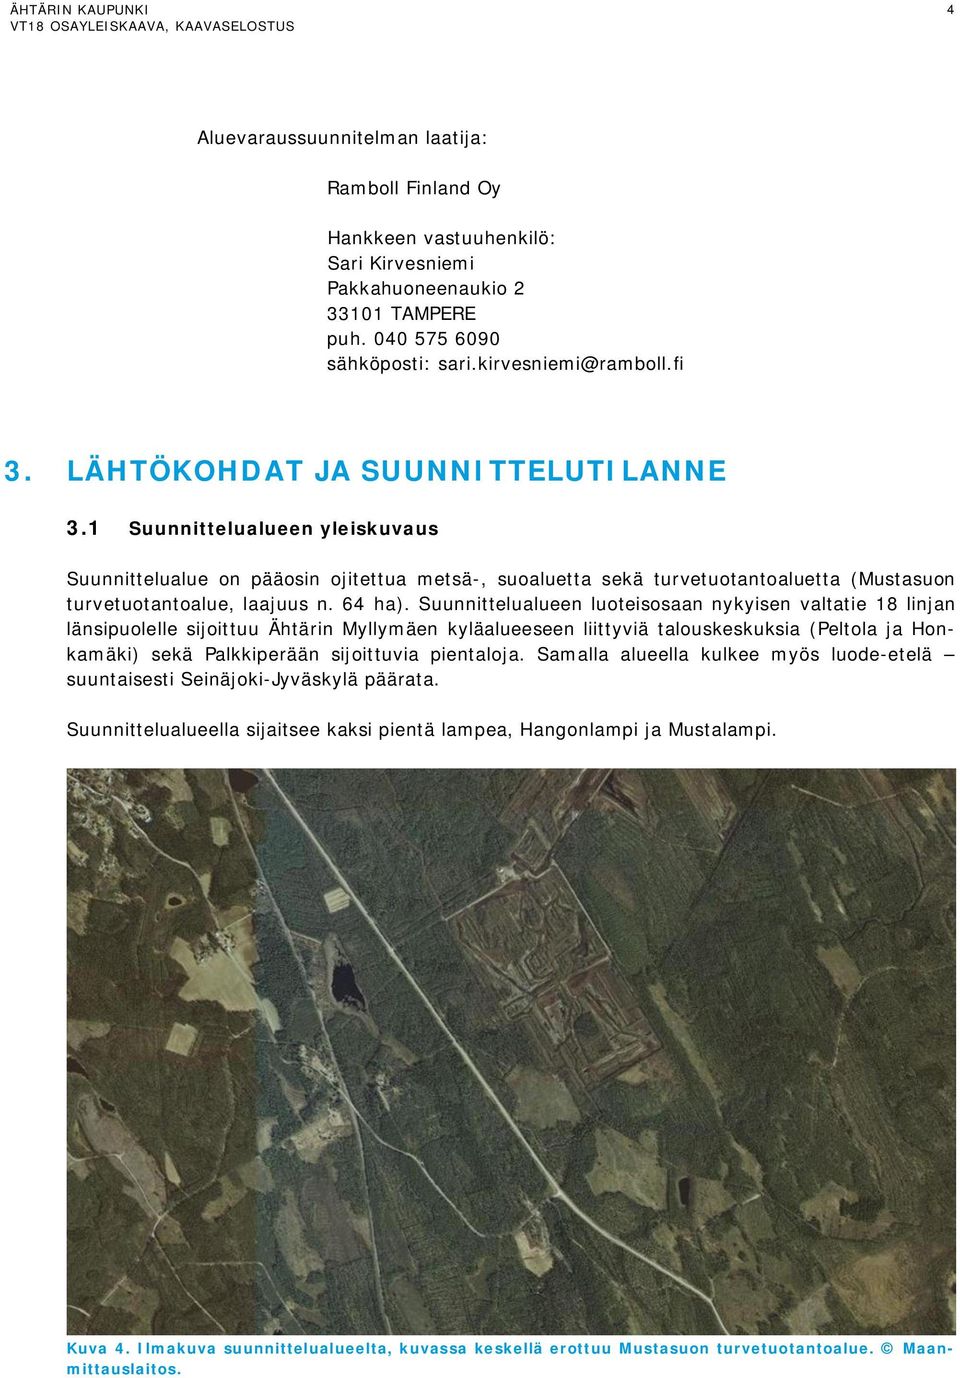 Suunnittelualueen luoteisosaan nykyisen valtatie 18 linjan länsipuolelle sijoittuu Ähtärin Myllymäen kyläalueeseen liittyviä talouskeskuksia (Peltola ja Honkamäki) sekä Palkkiperään sijoittuvia